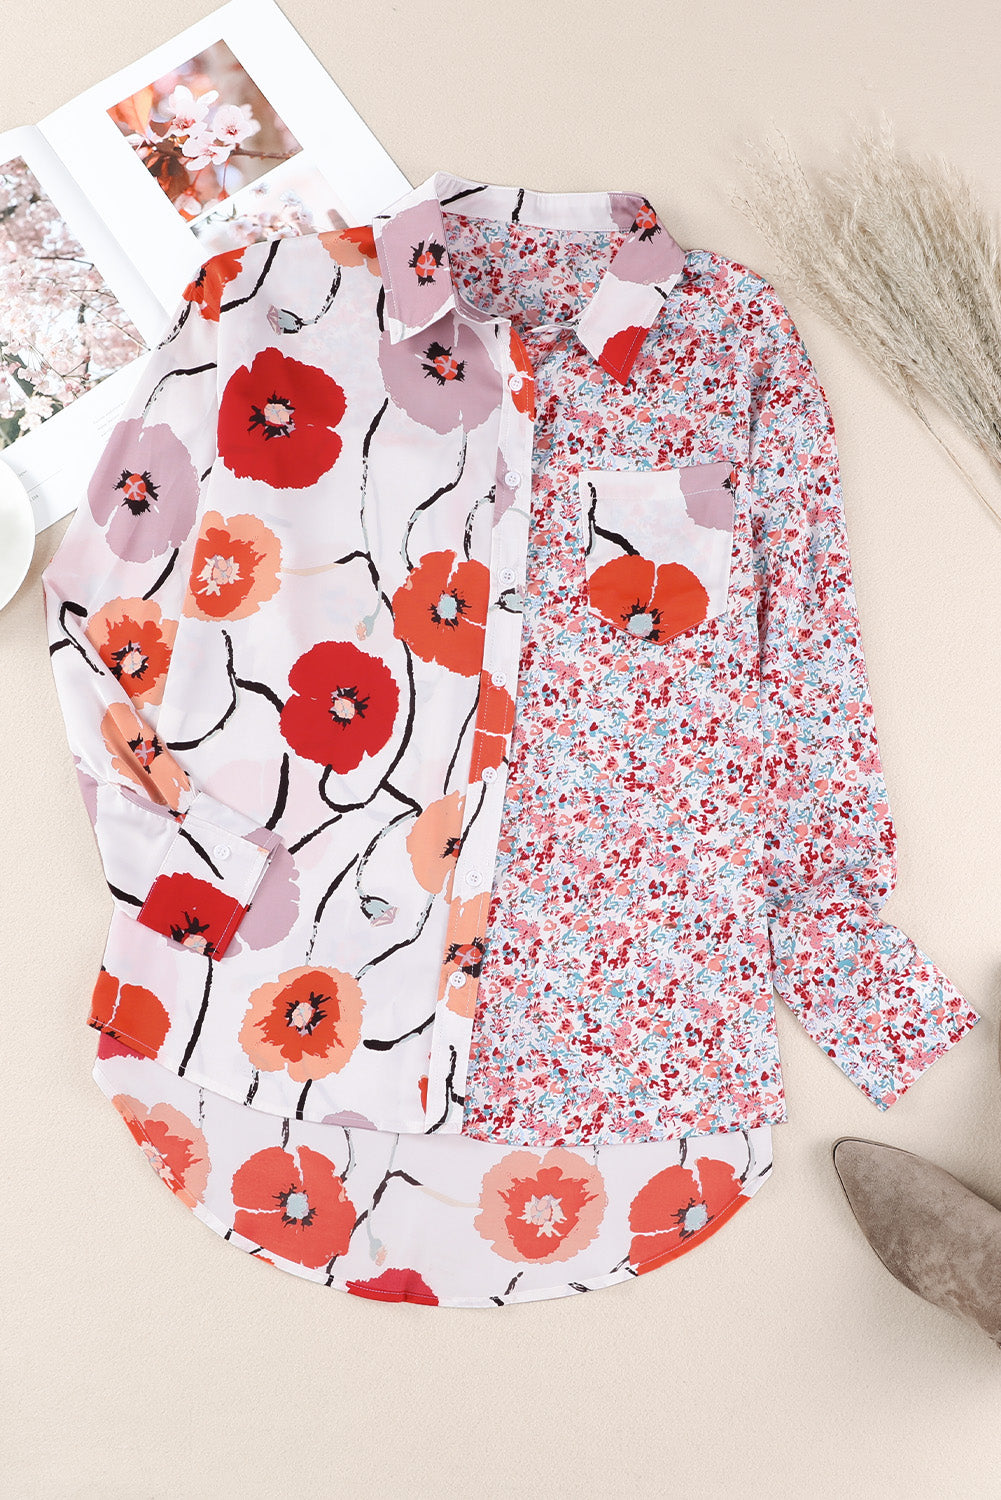 Feurig rotes, florales, geknöpftes Patchwork-Hemd mit Tasche